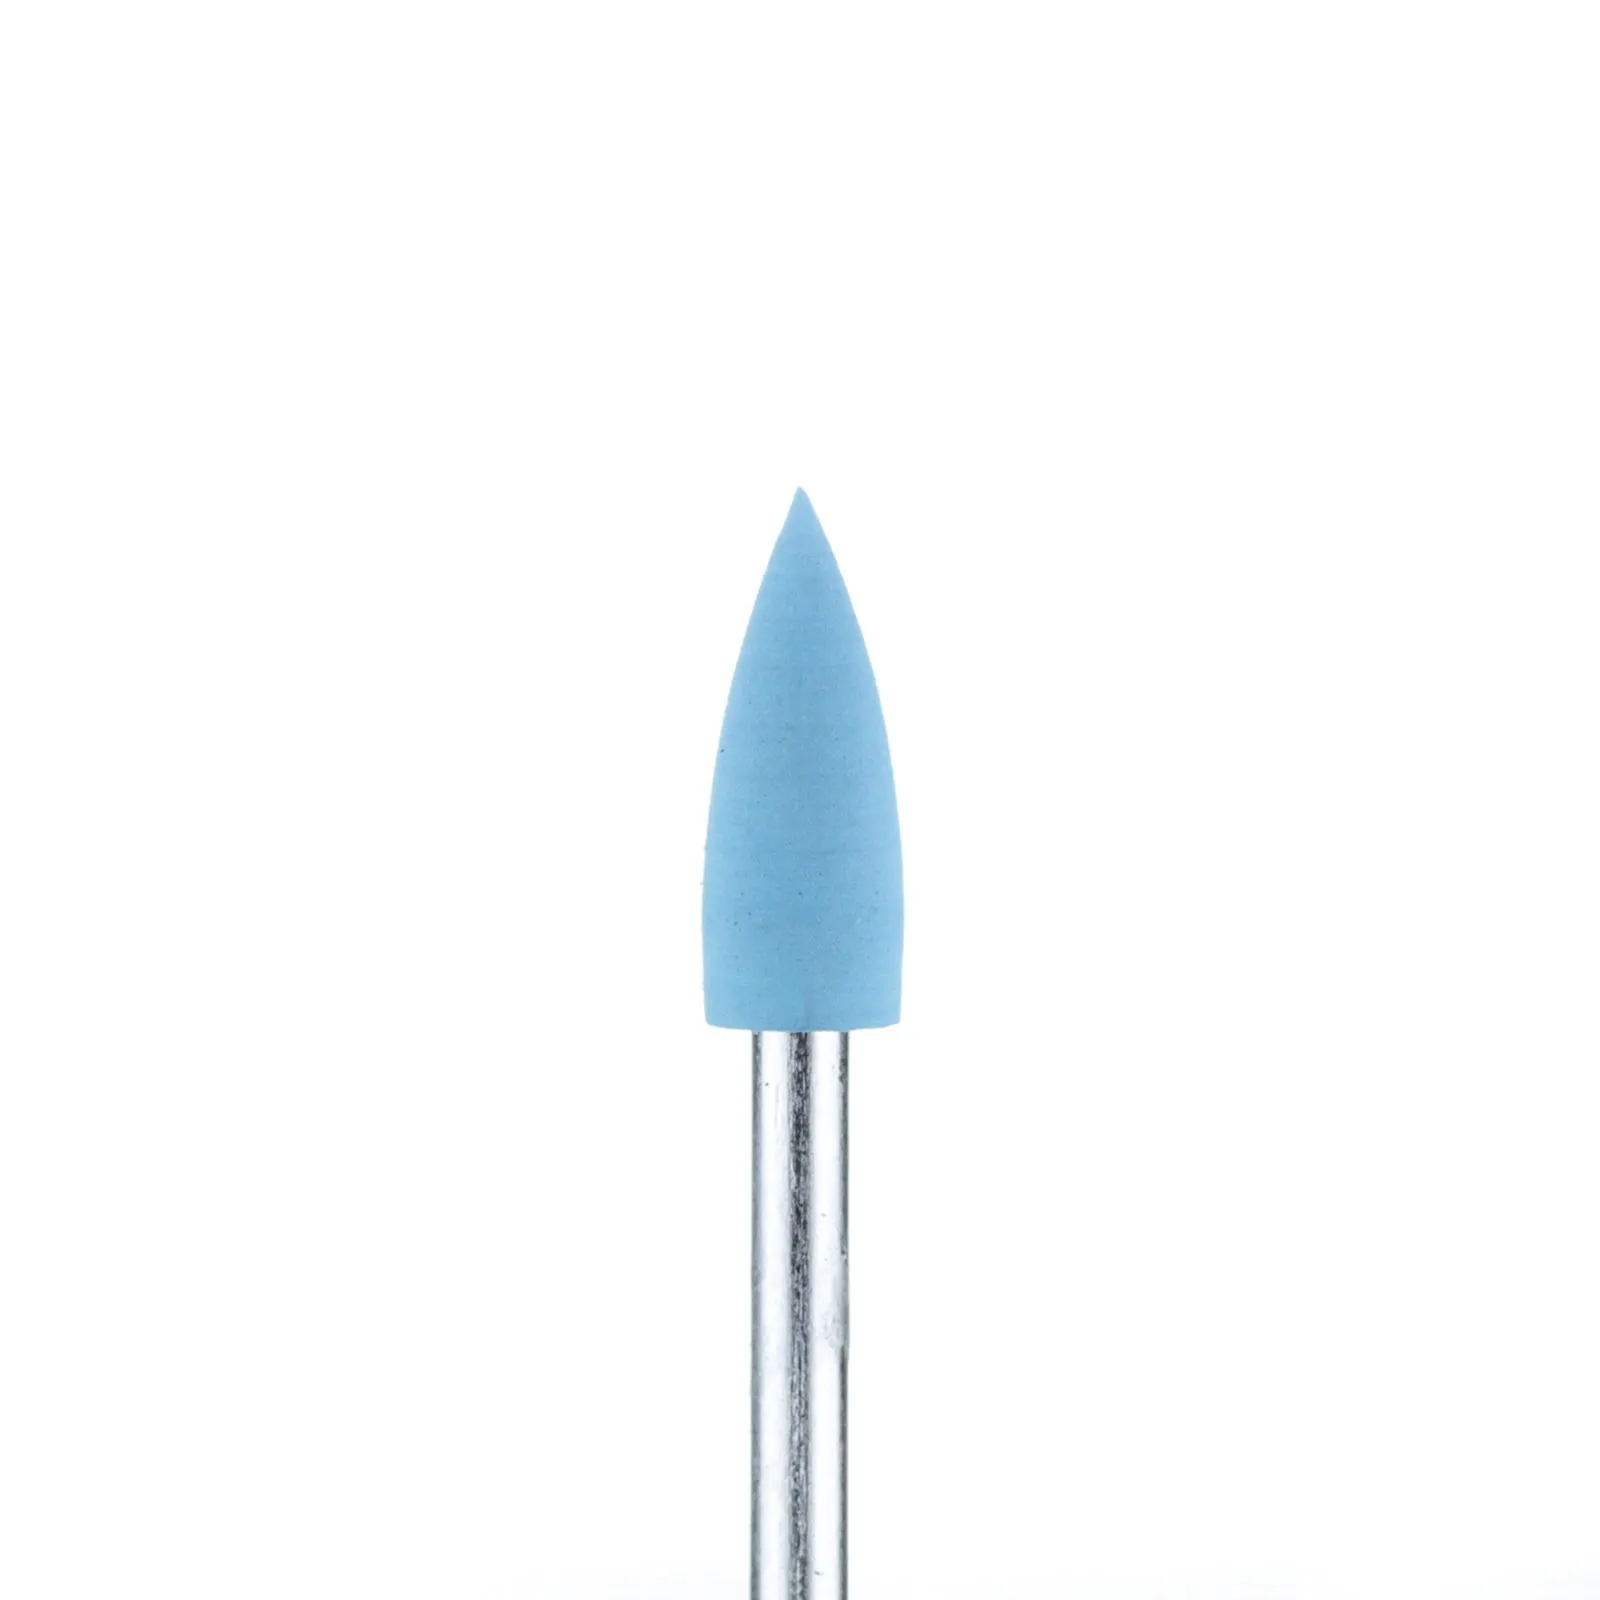 Полировщик очень маленький острый конус силиконовый голубой (диаметр 5 мм)